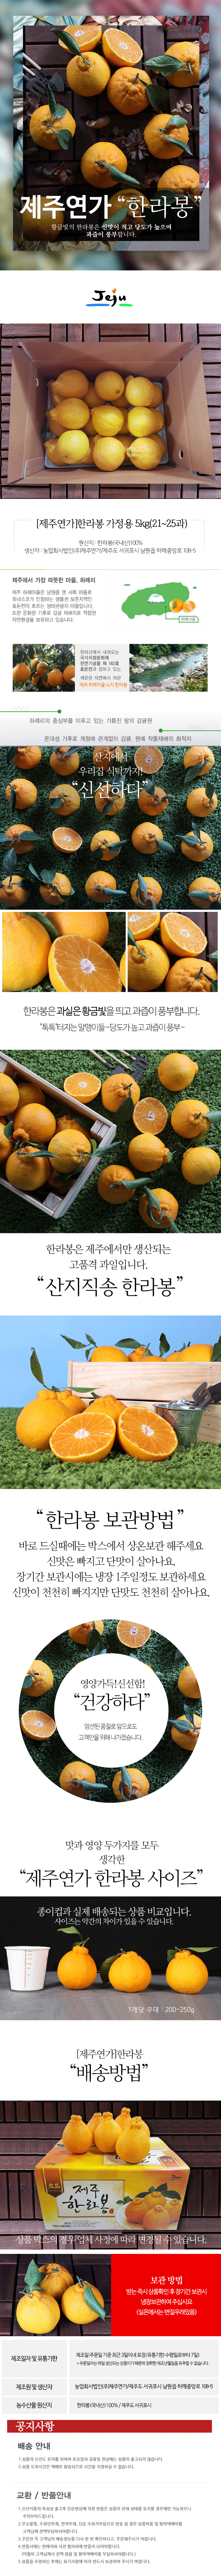 <현가원>한라봉3KG/5kg(가정용)